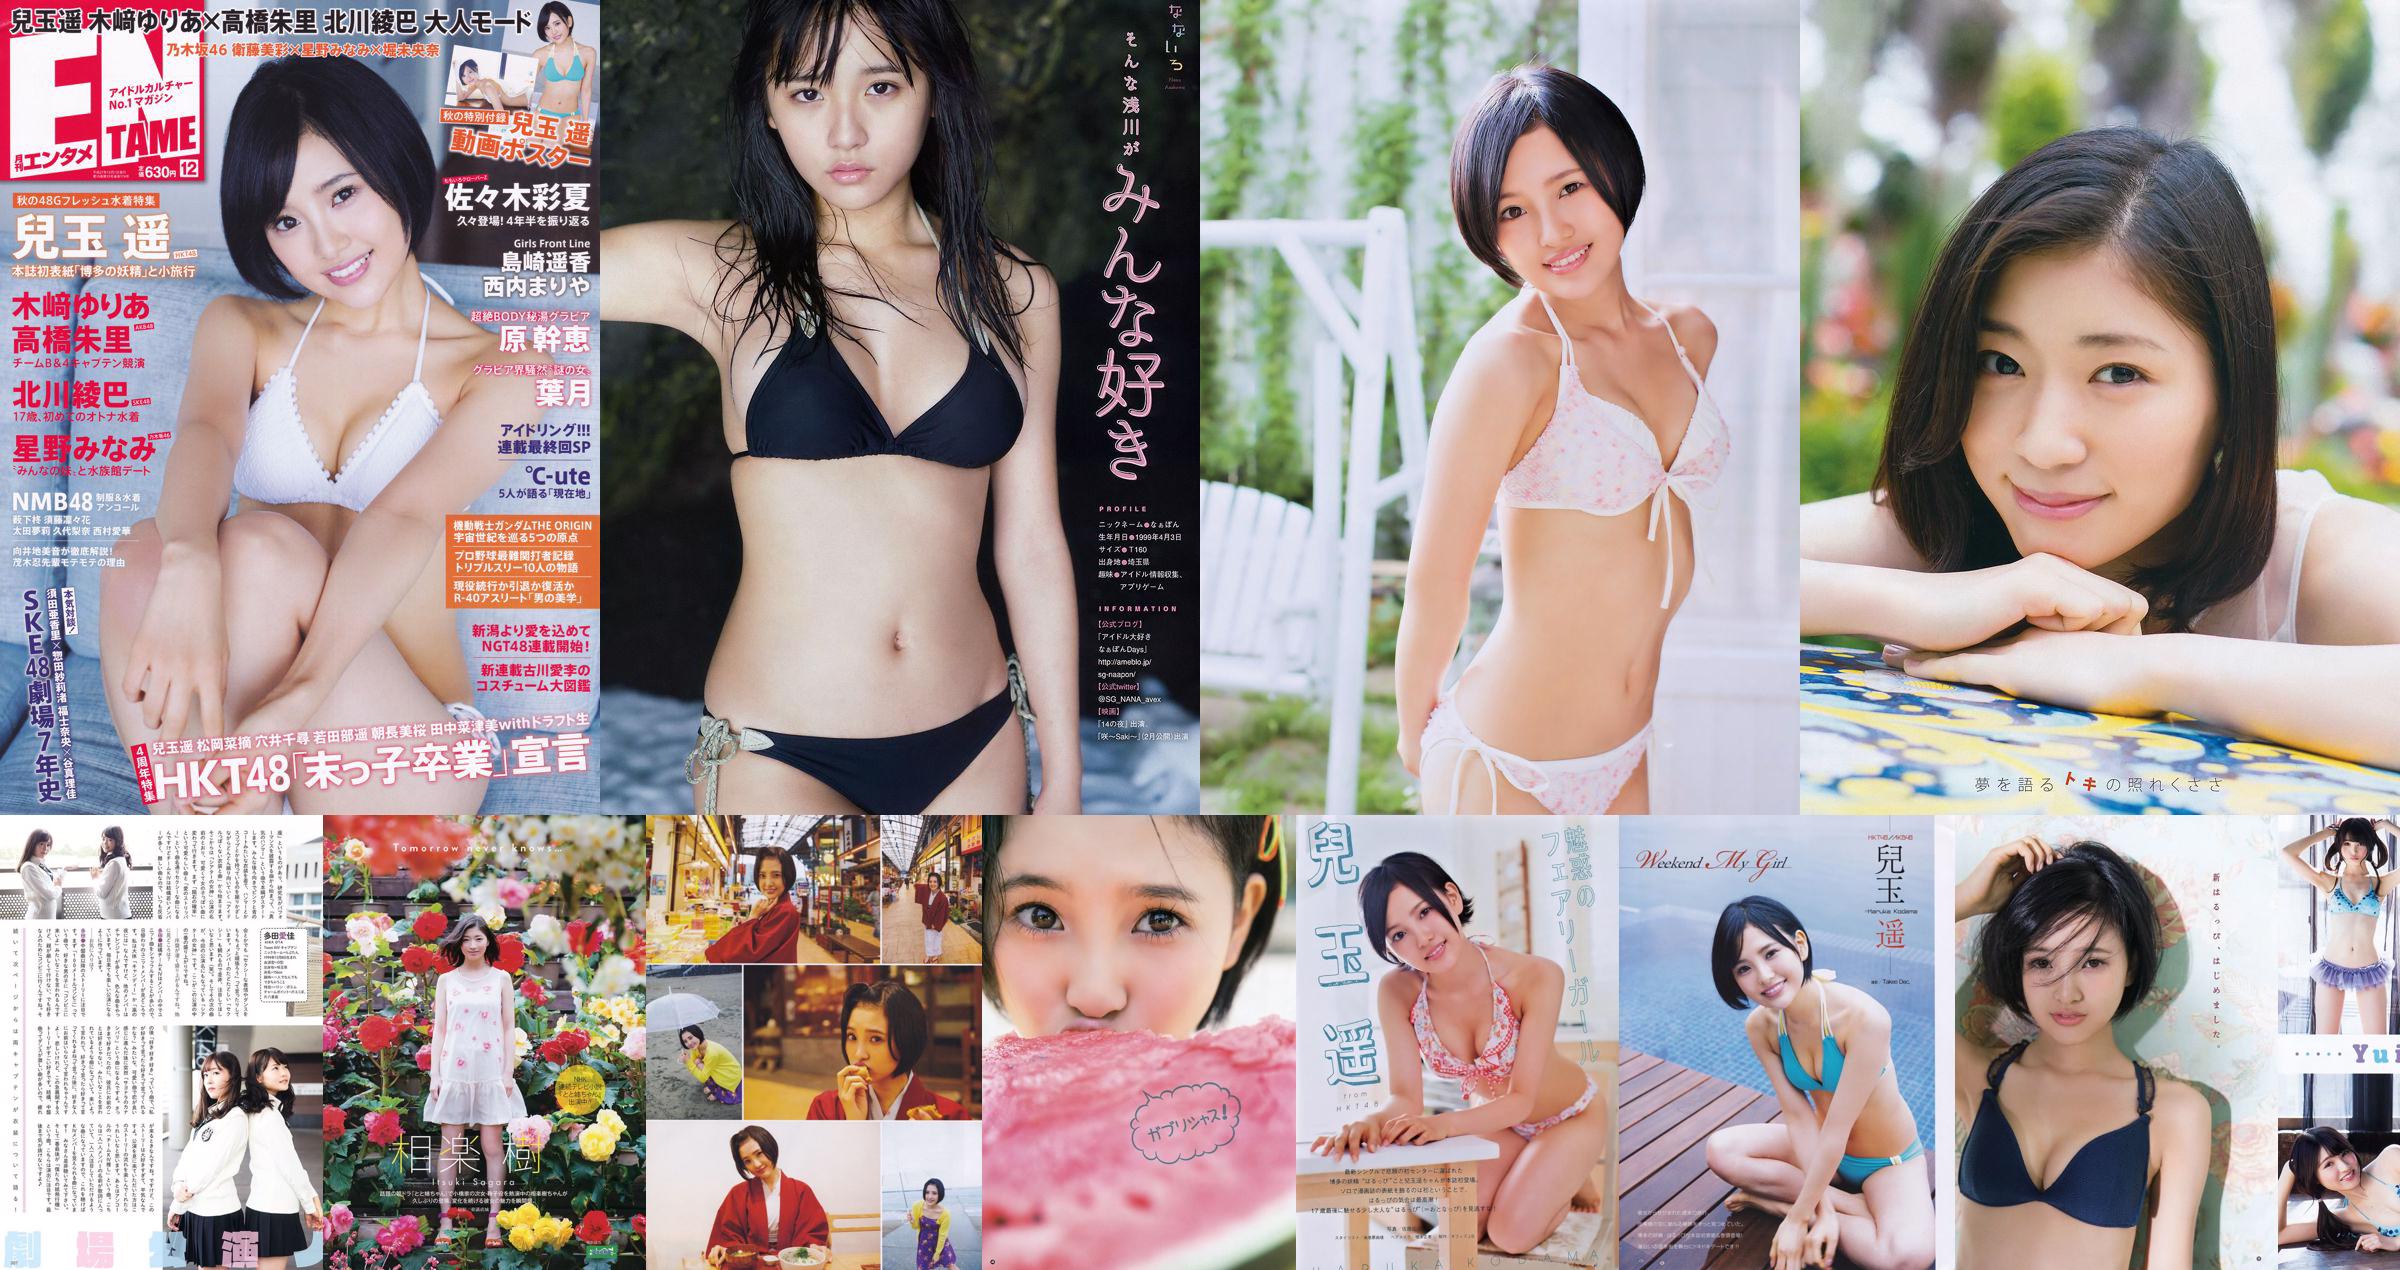 [Young Gangan] Haruka Kodama Saki Takeda 2015 No.12 Photo Palet No.e40e81 หน้า 3